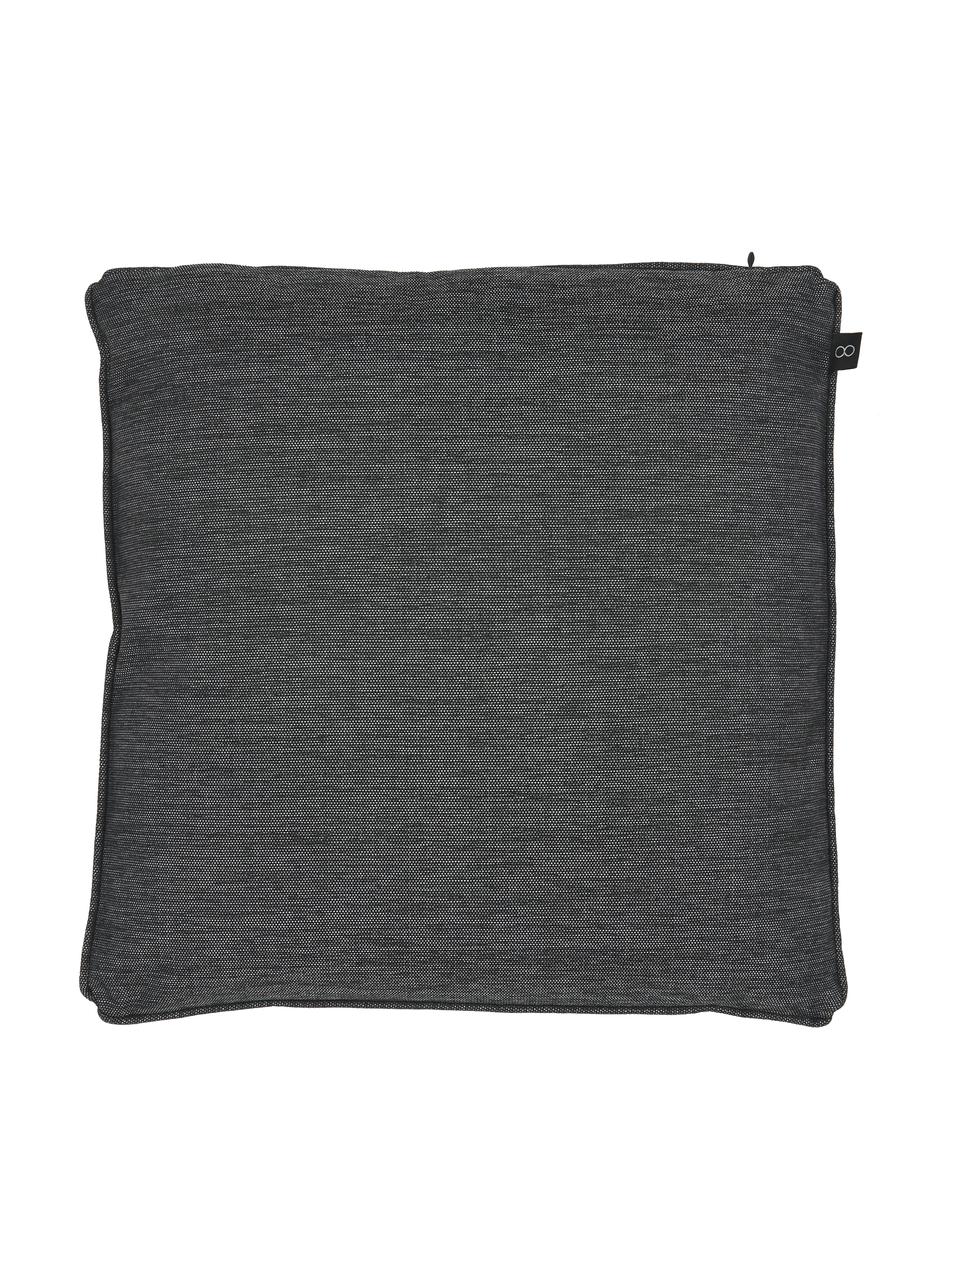 Kussenhoes Arte in zwart/wit, 100% polyester, Zwart, wit, B 45 x L 45 cm